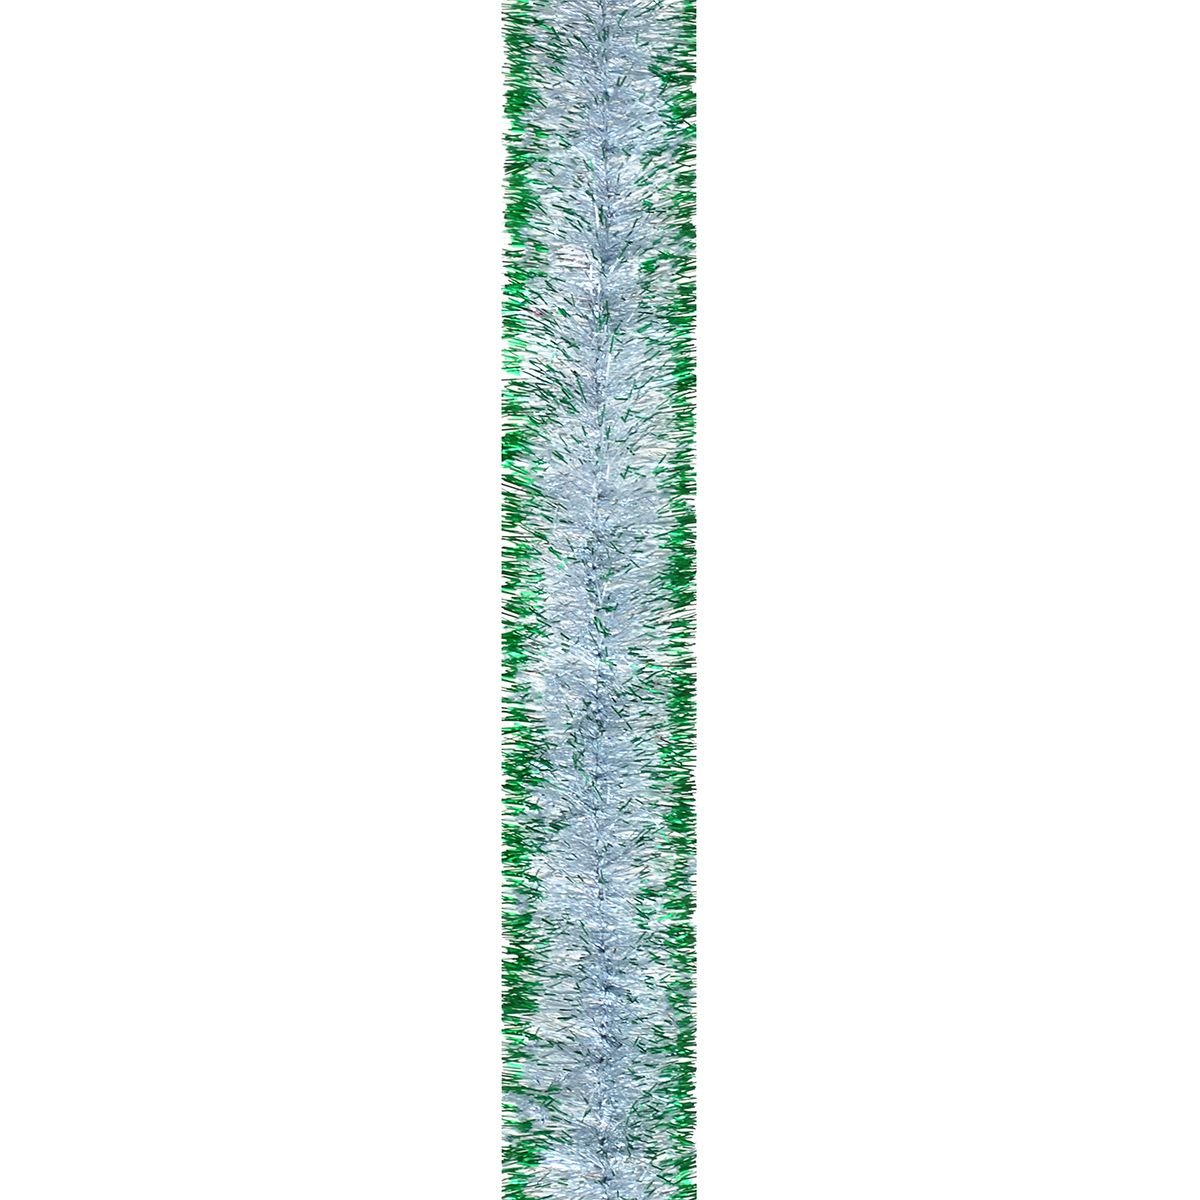 Мішура Novogod'ko 5 см 2 м срібло з зеленими кінчиками (980392) - фото 1